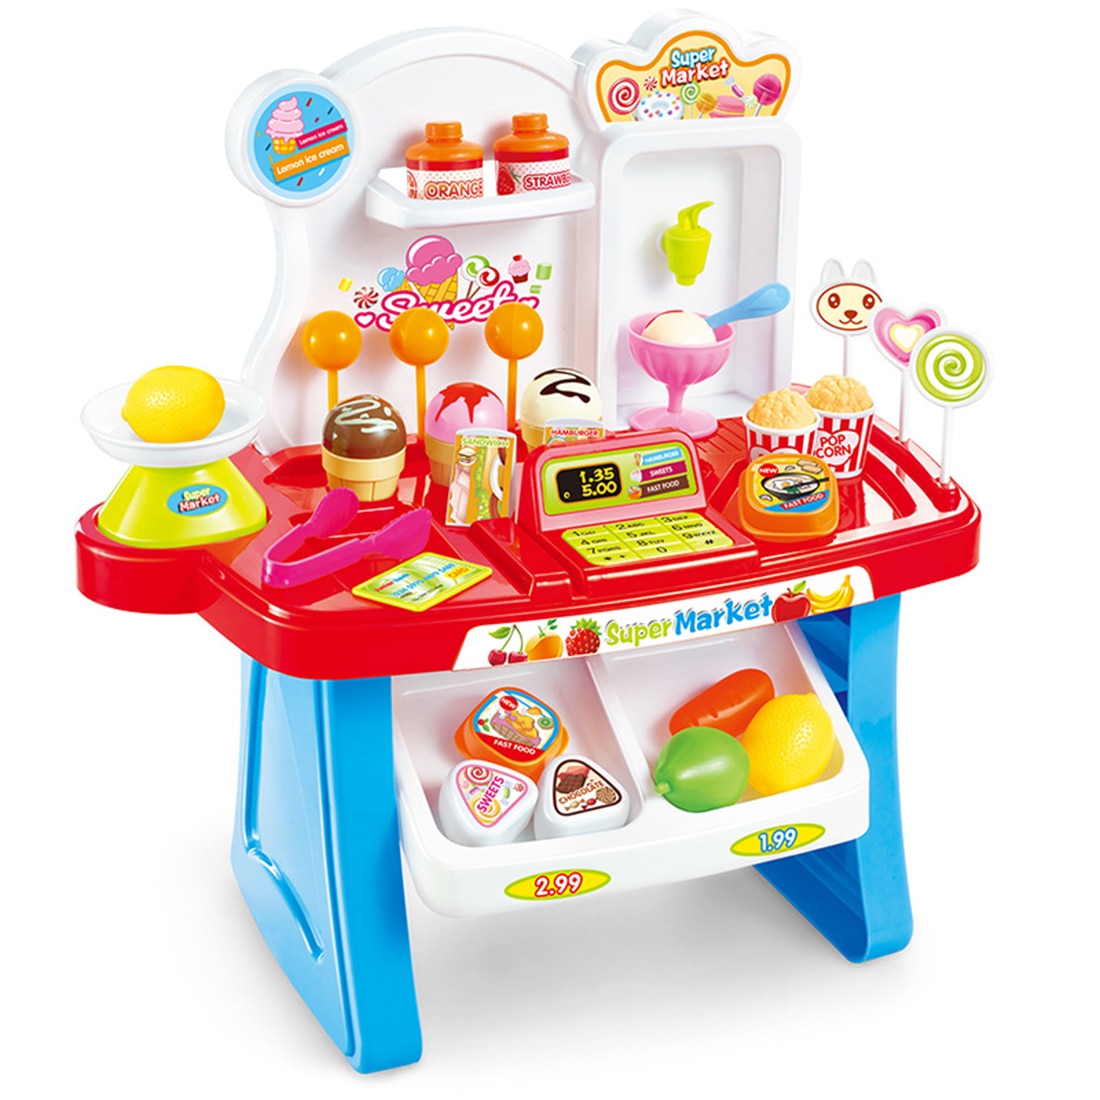 34 stk / sæt børn mini supermarked legesæt foregiver shopping marked legestand dagligvarer legetøj med lys og lyd - blå / lyserød